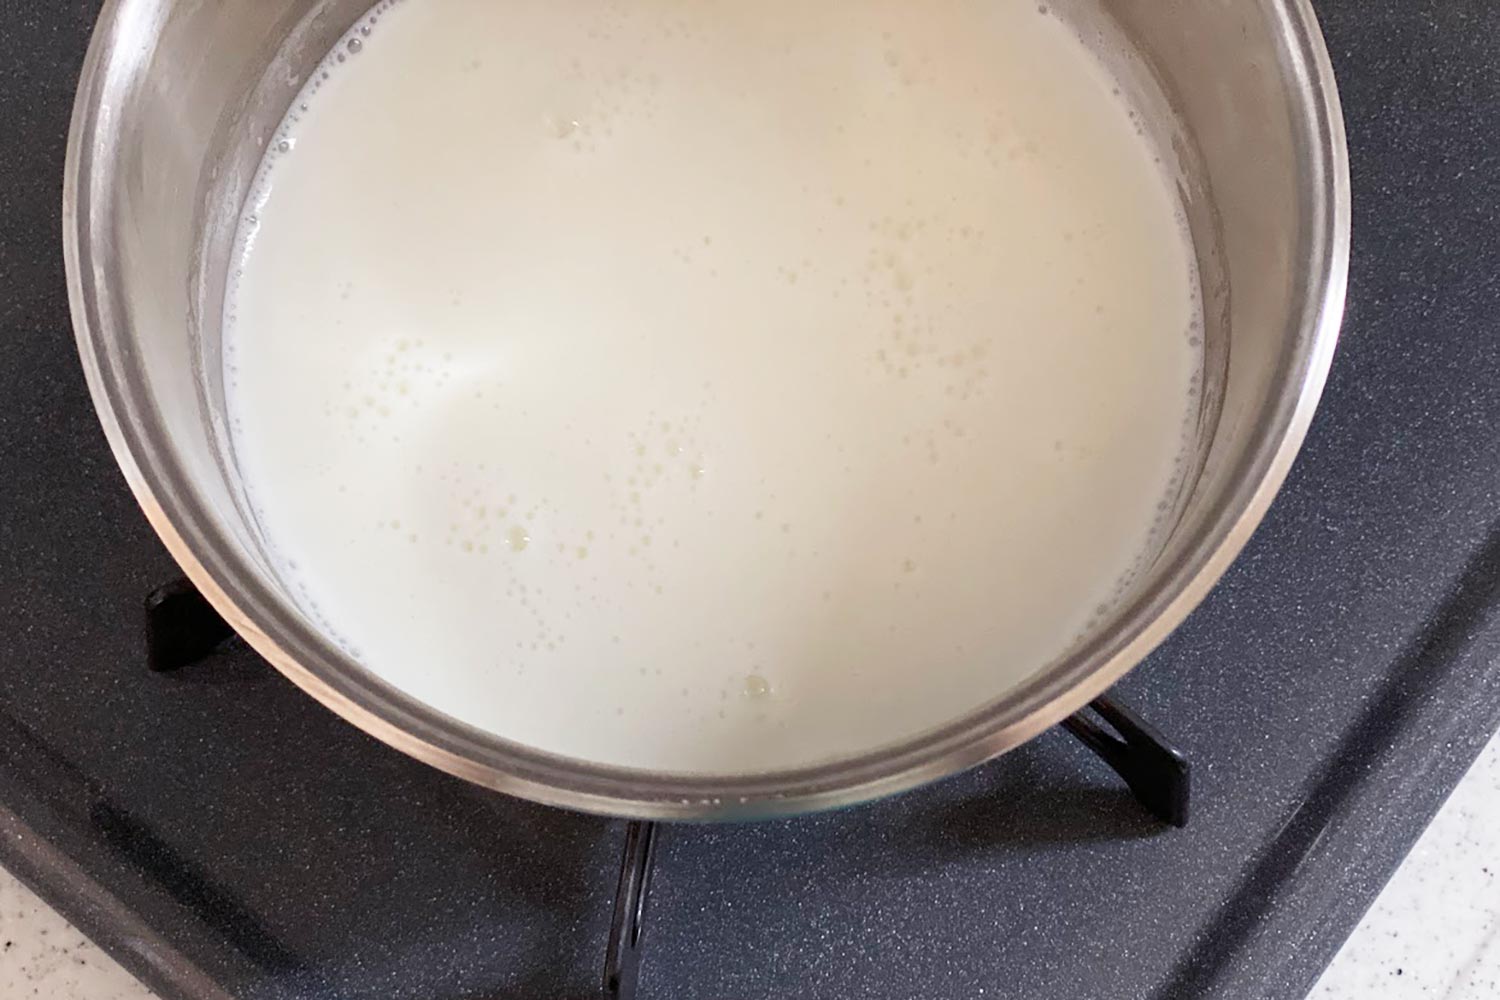 加熱の段階で牛乳の水分とクリーム分がやや分離している感じがあったが、しっかり混ぜて分離しないようにした。